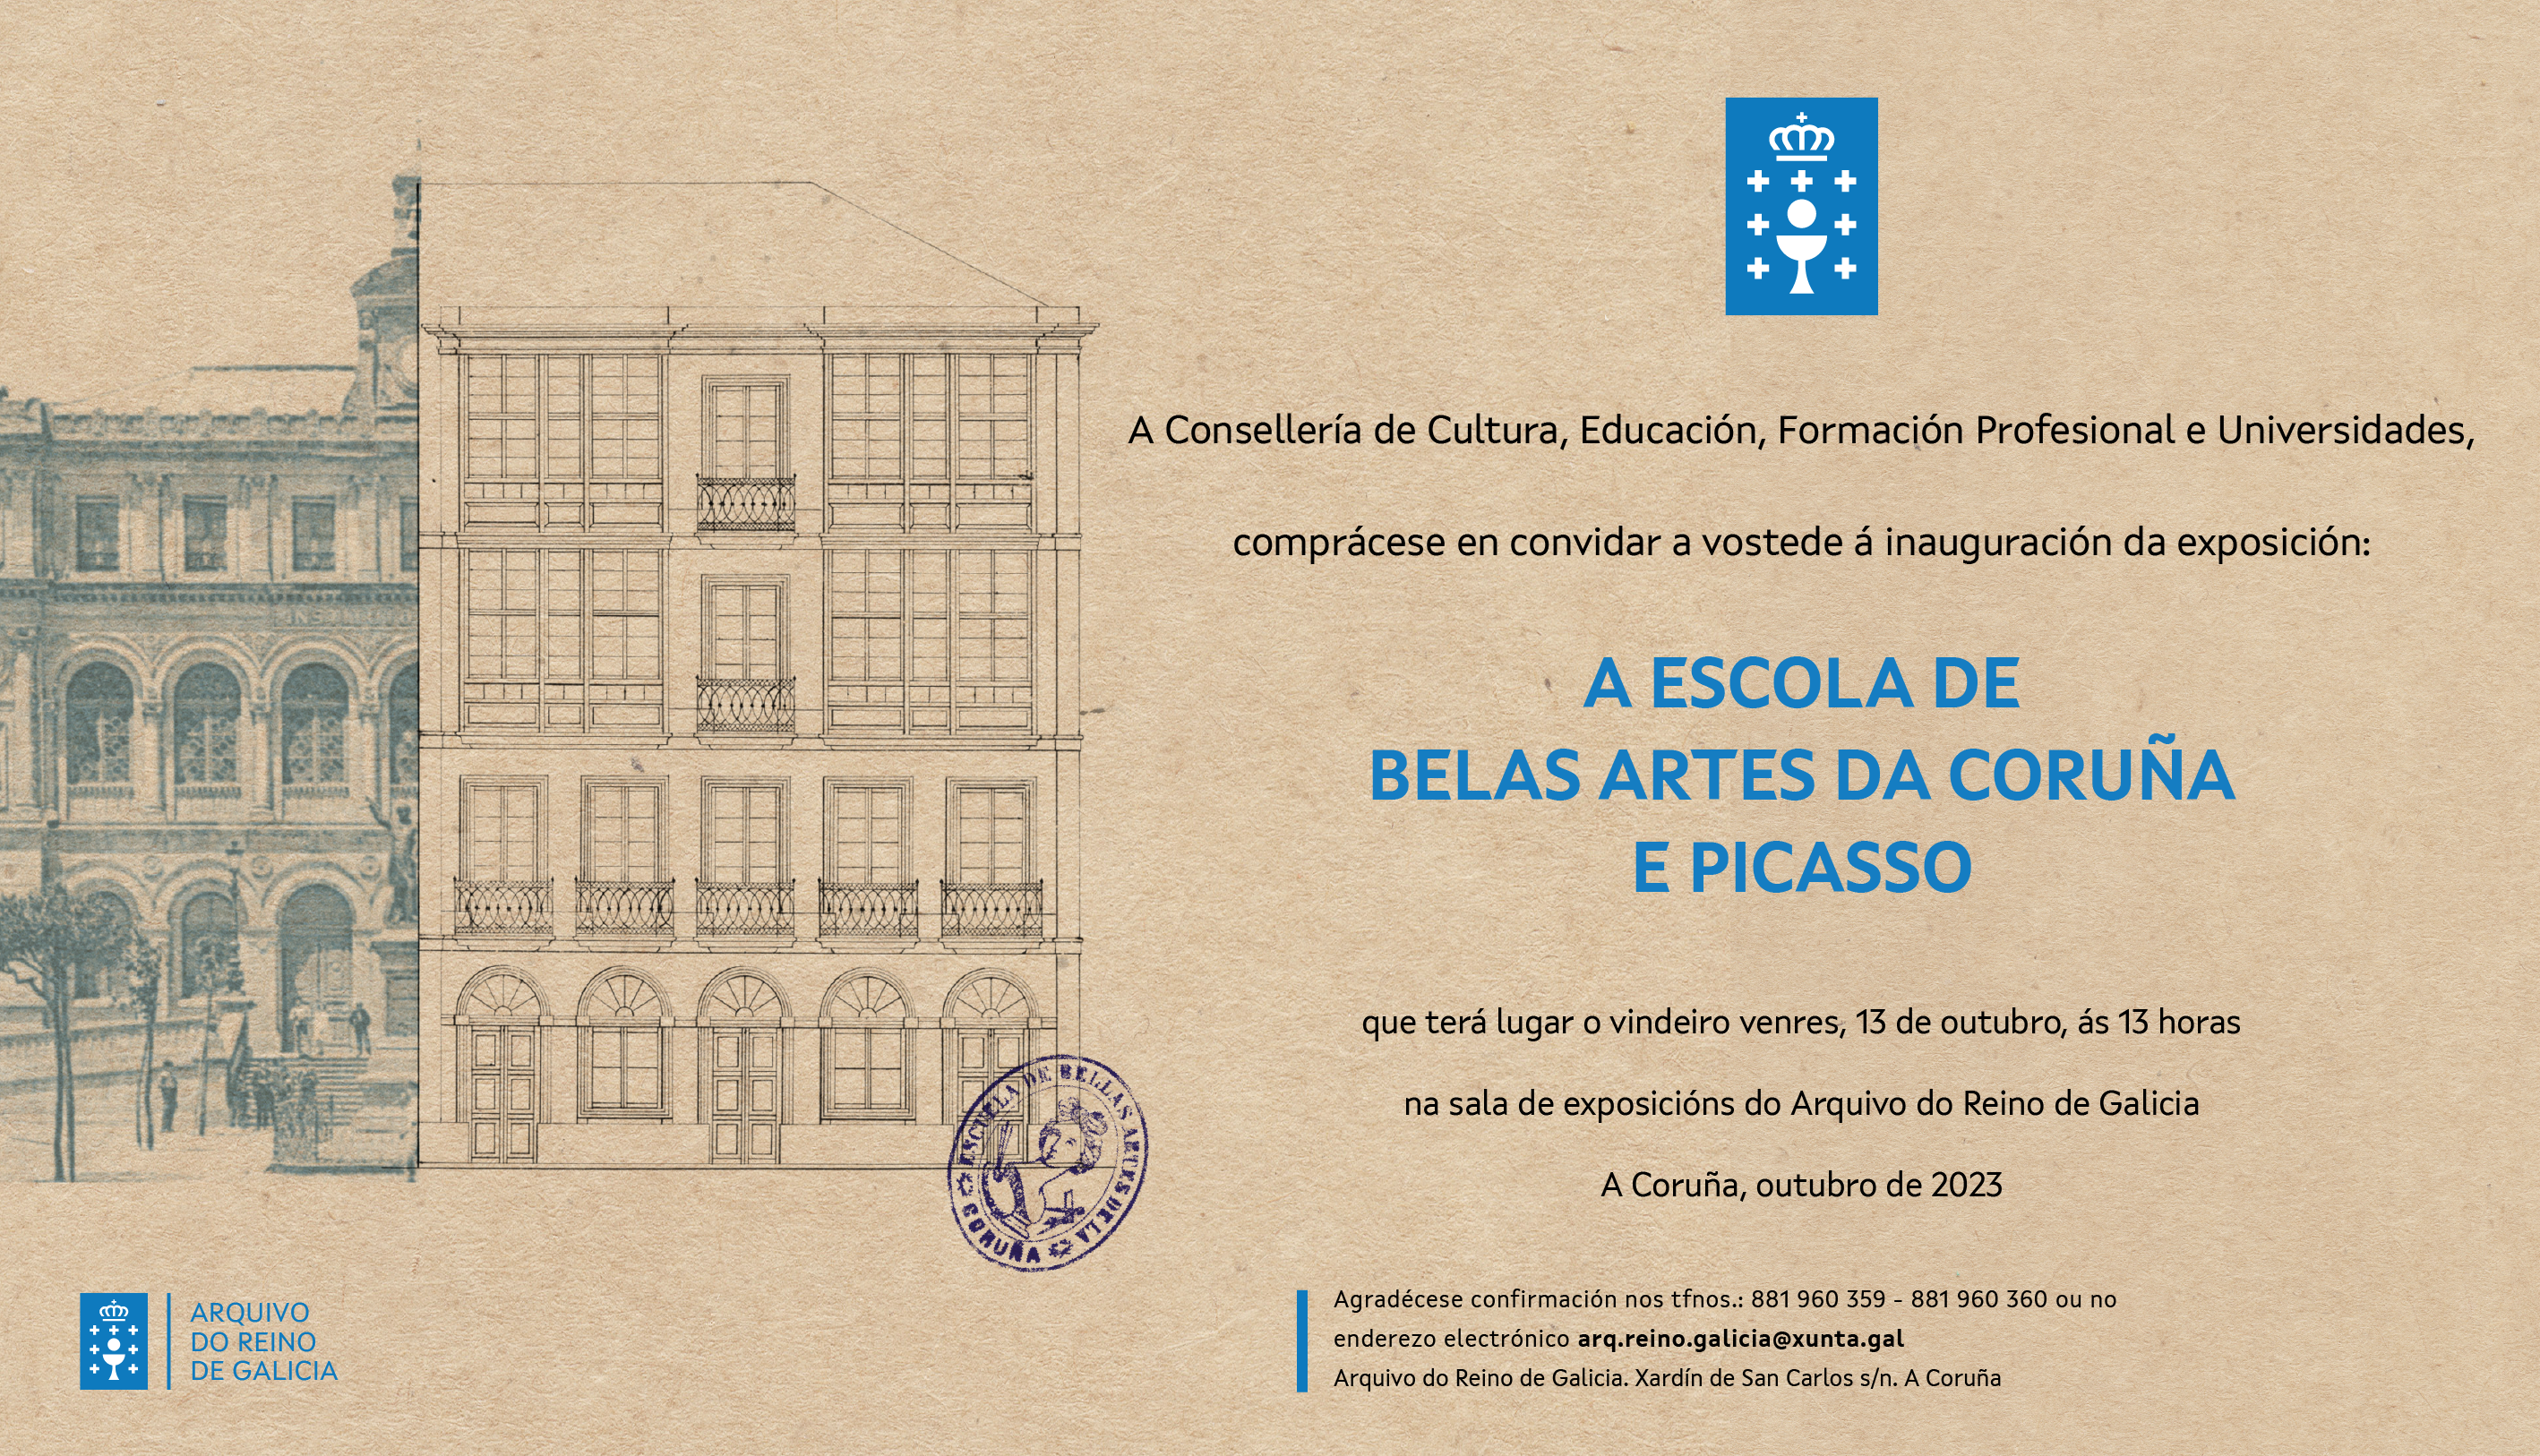 Convite da exposición "A Escola de Belas Artes da Coruña e Picasso"